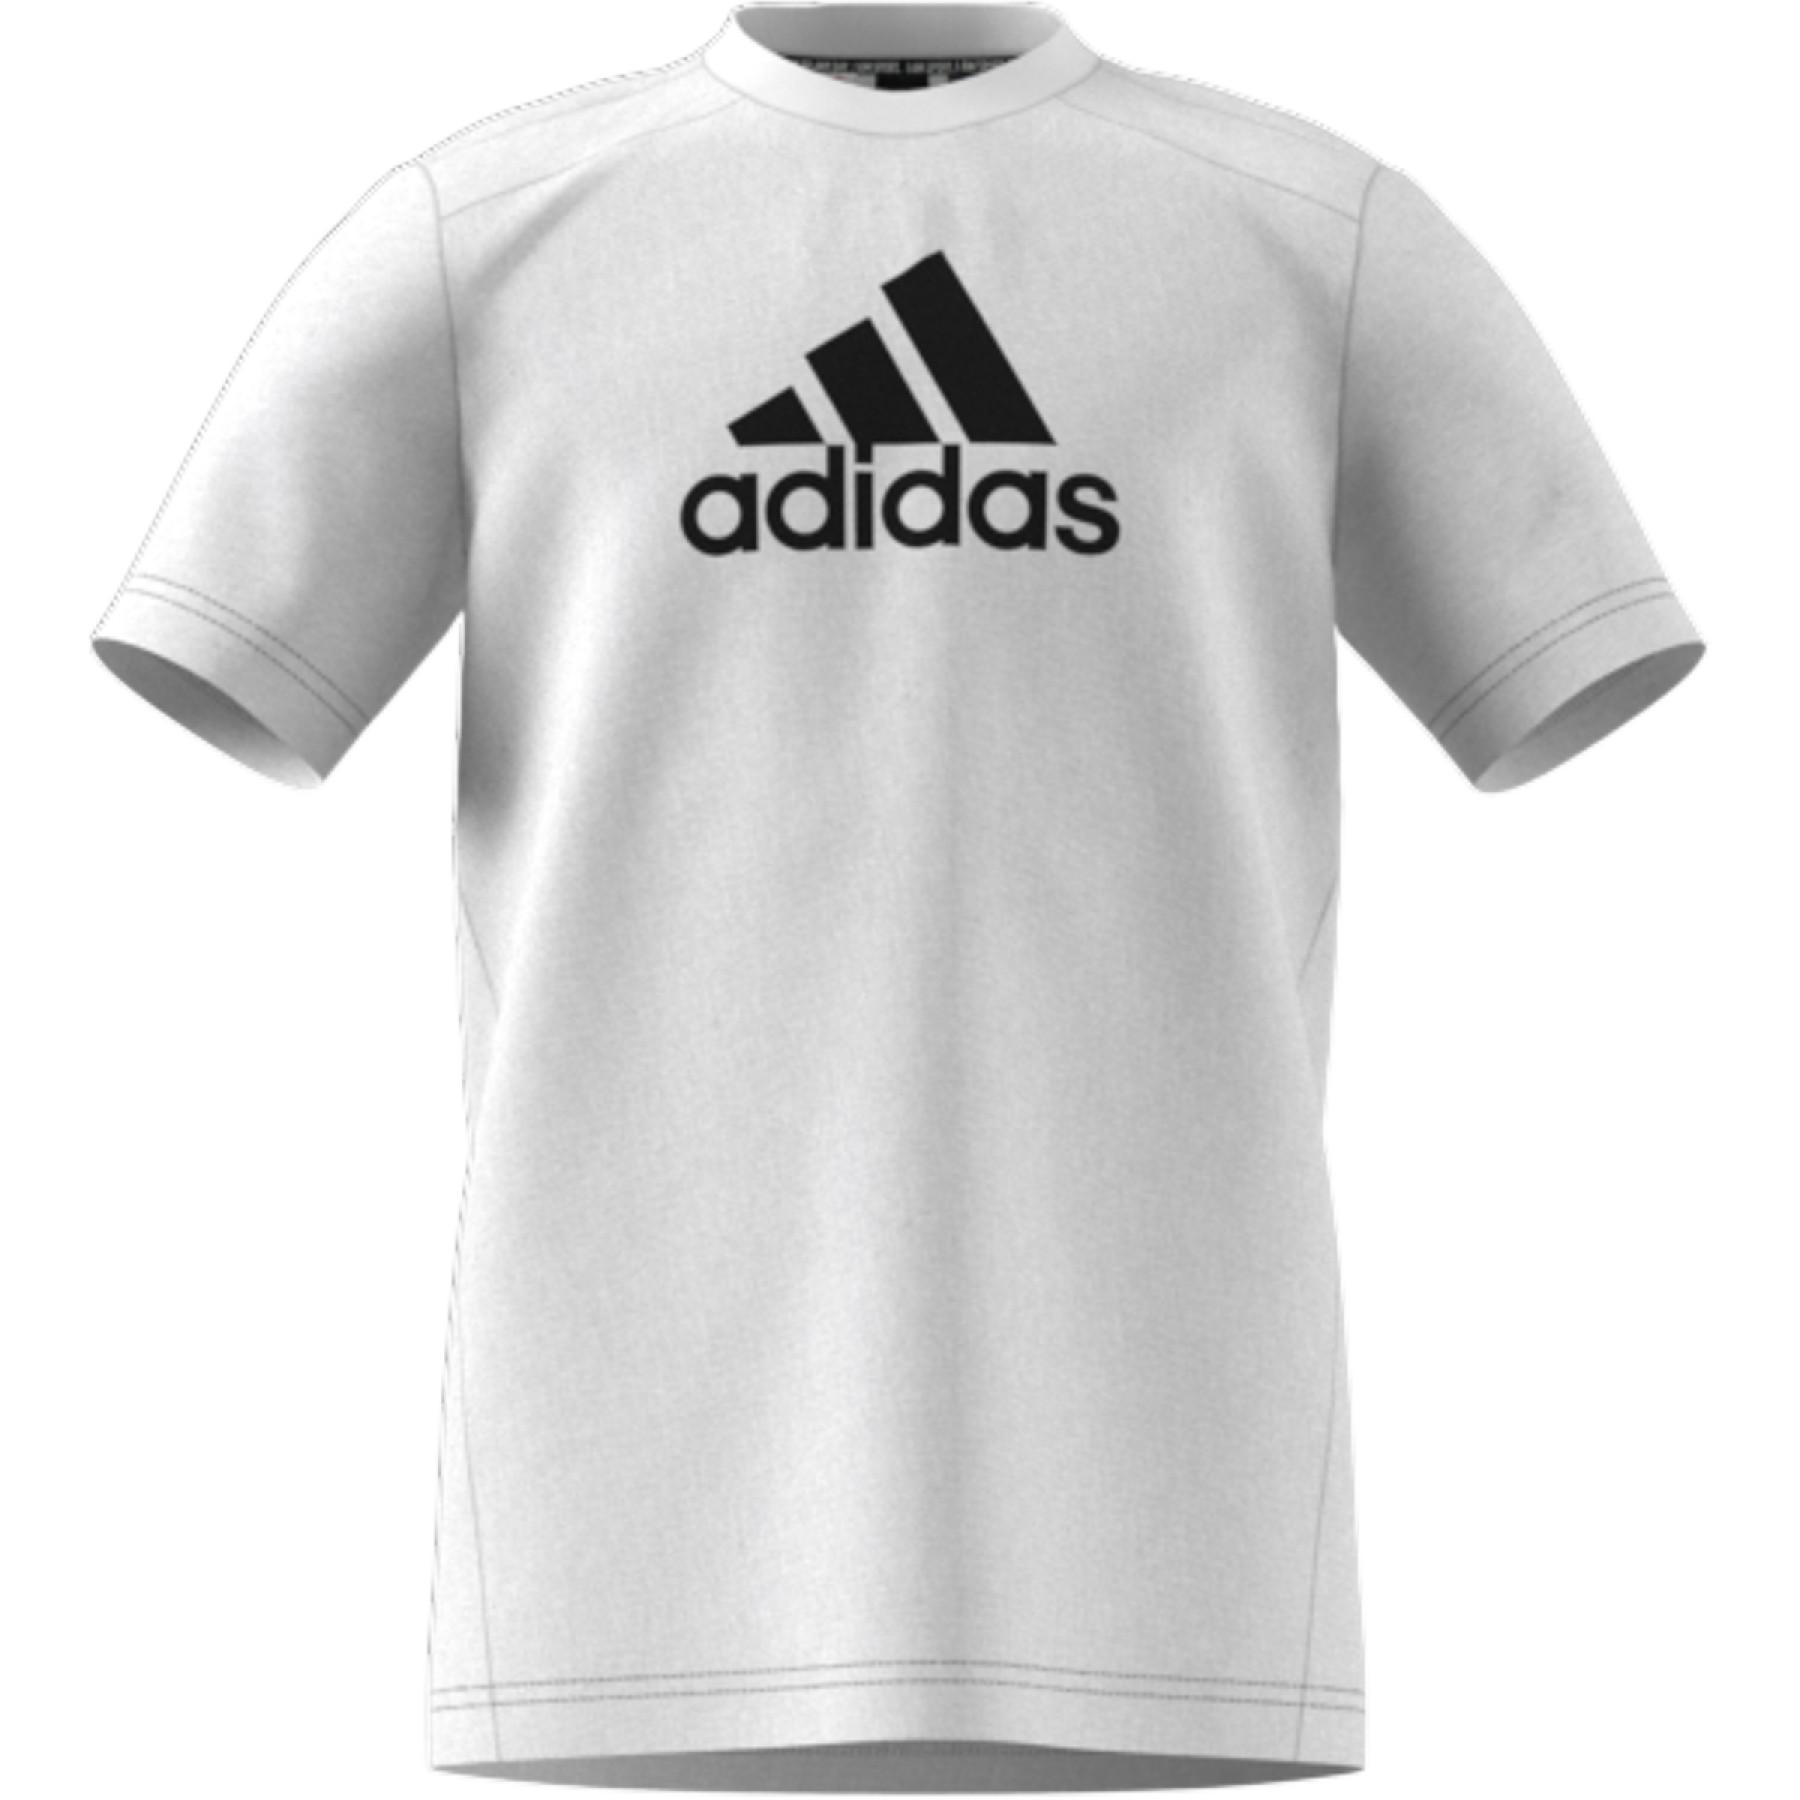 Kinder-T-Shirt adidas Logo